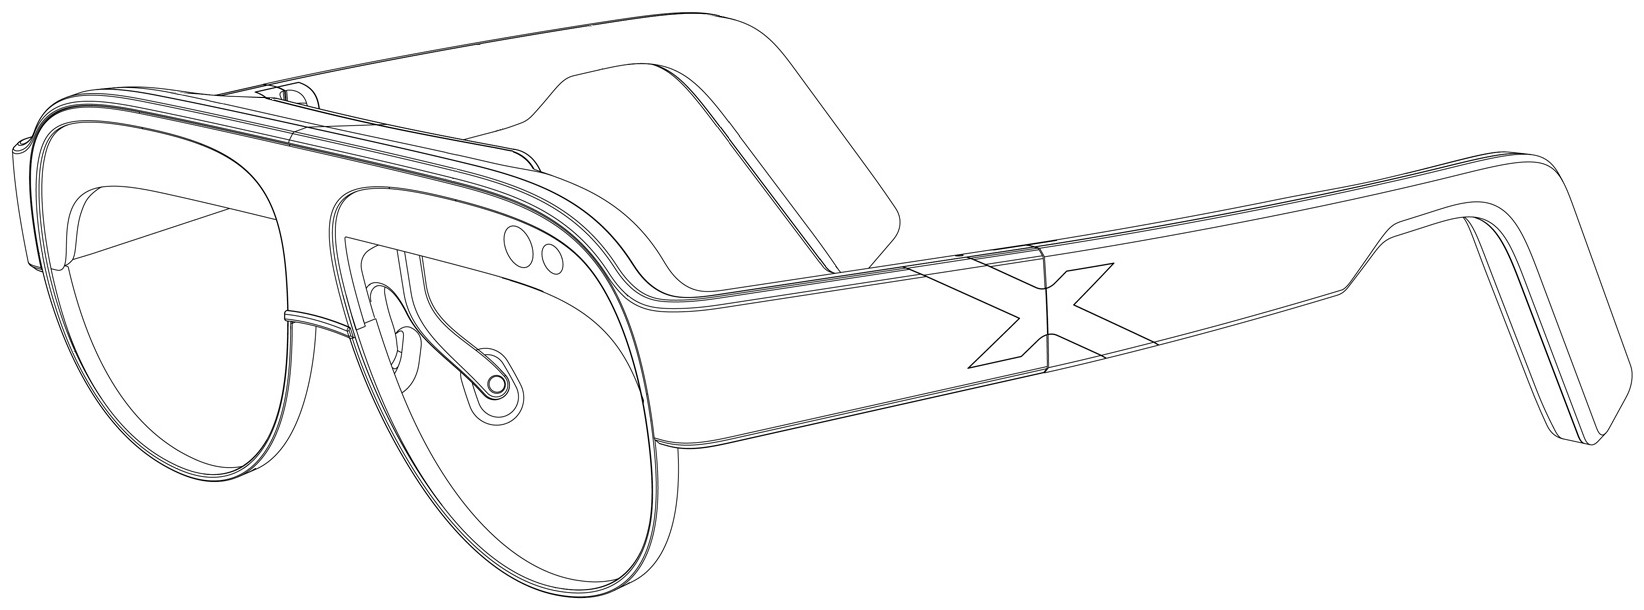 星纪魅族新增AR眼镜（SKY）设计专利